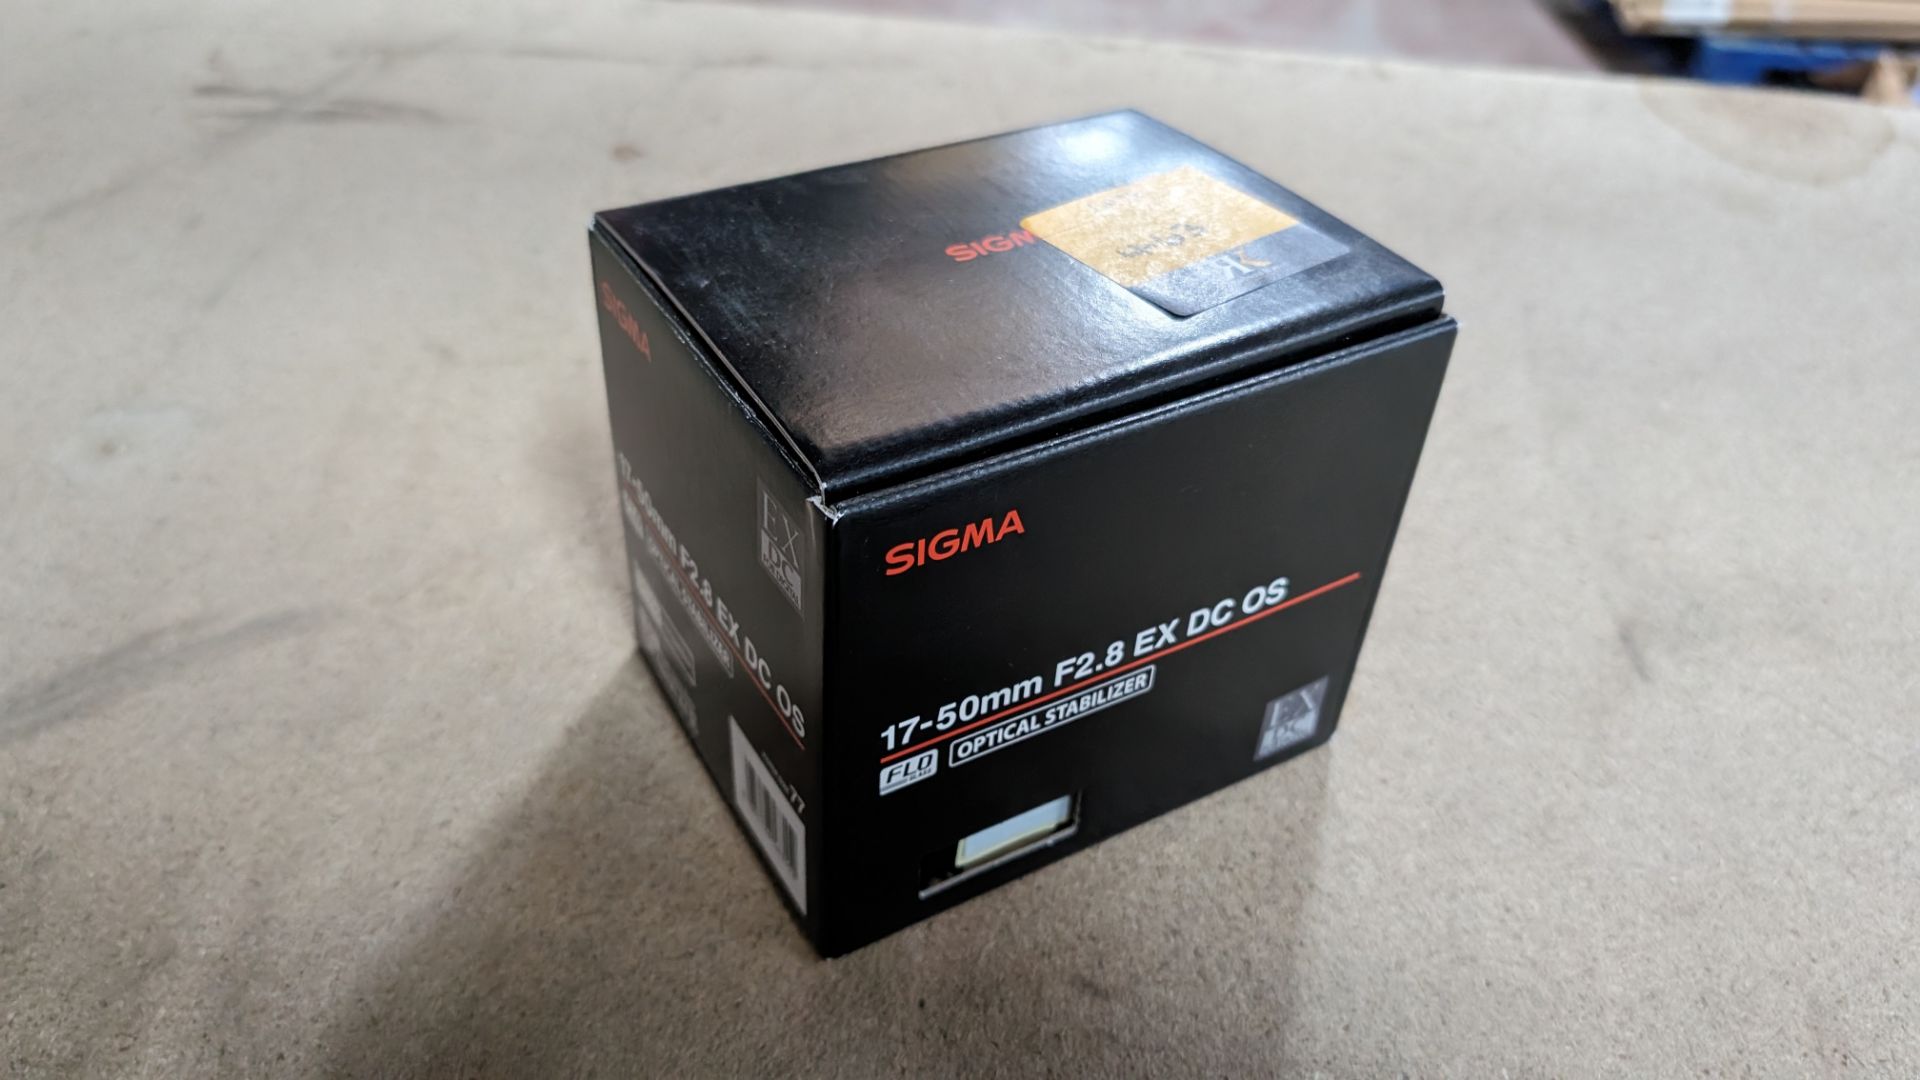 Sigma 17-50mm f2.8 EX DC OS optical stabilizer lens, including soft carry case - Image 6 of 6